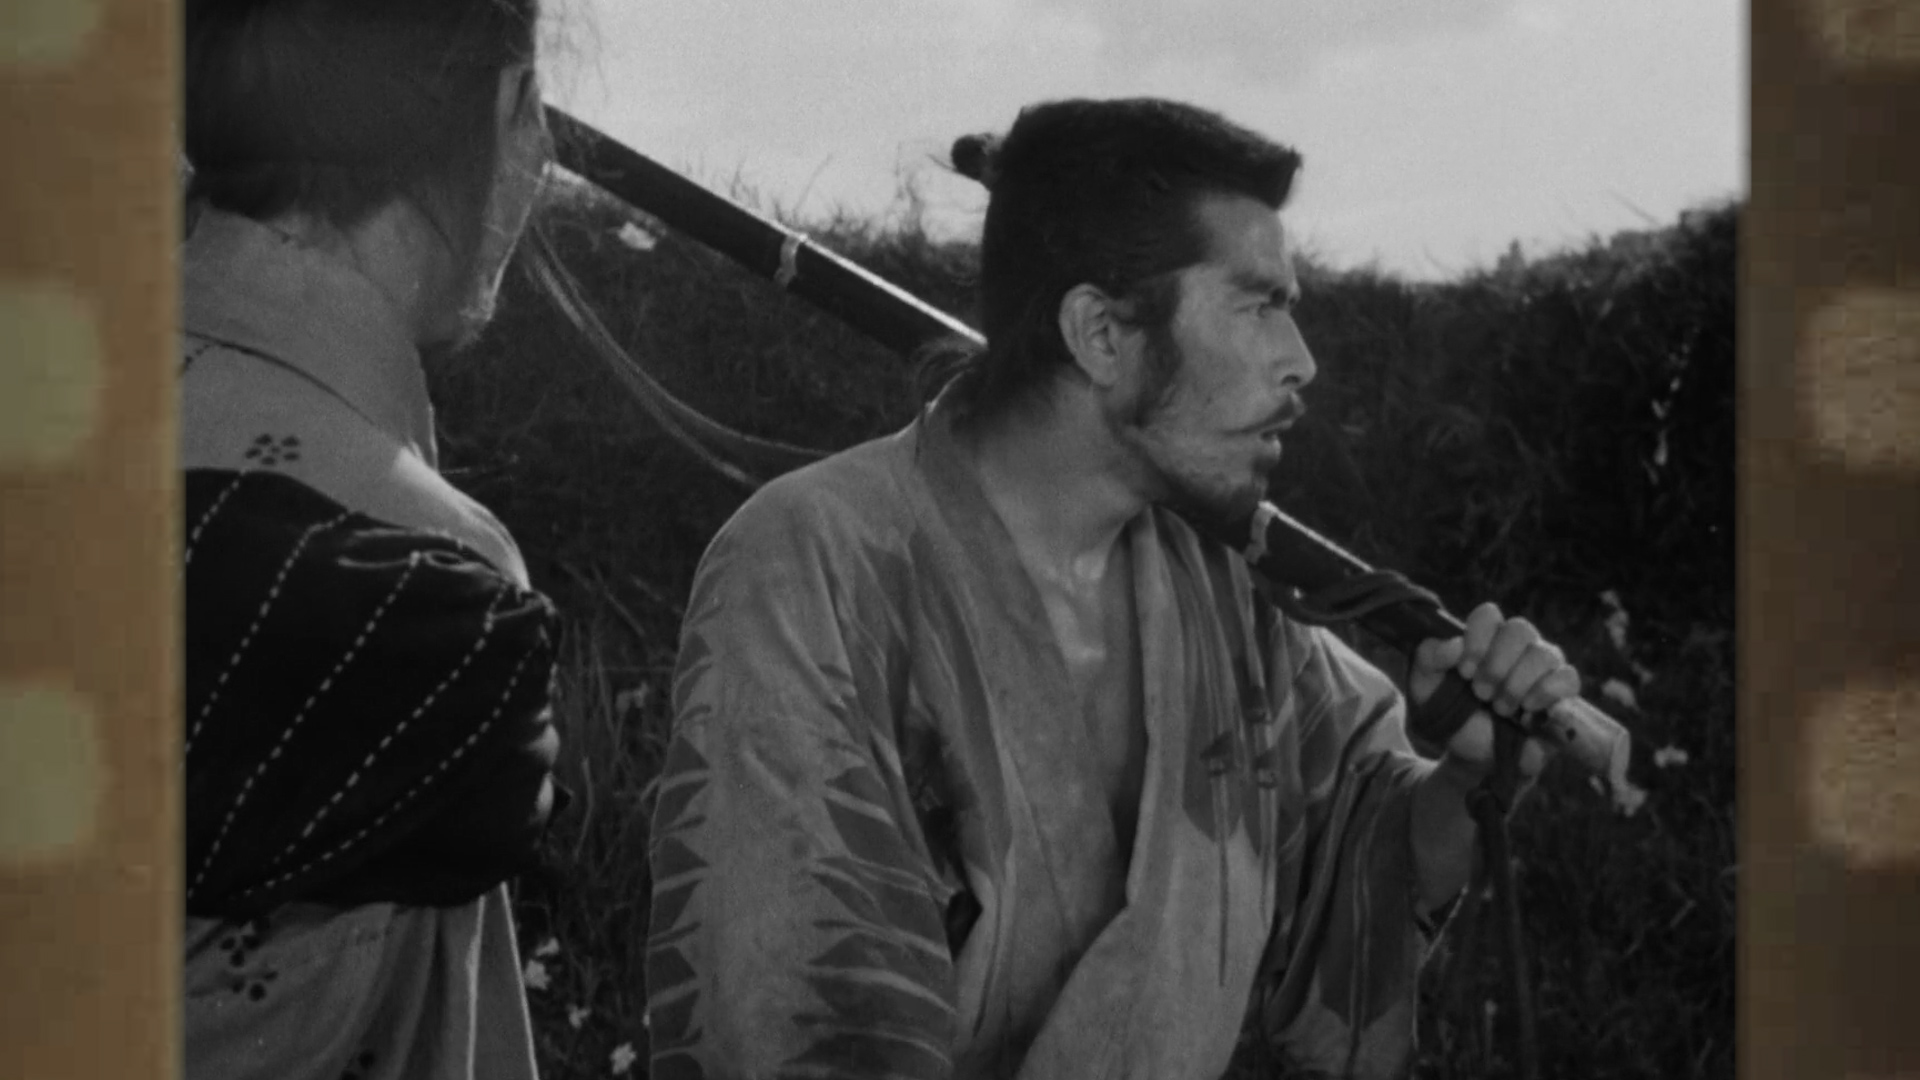 从文化角度解读《七武士》:古代日本战国时期的缩影